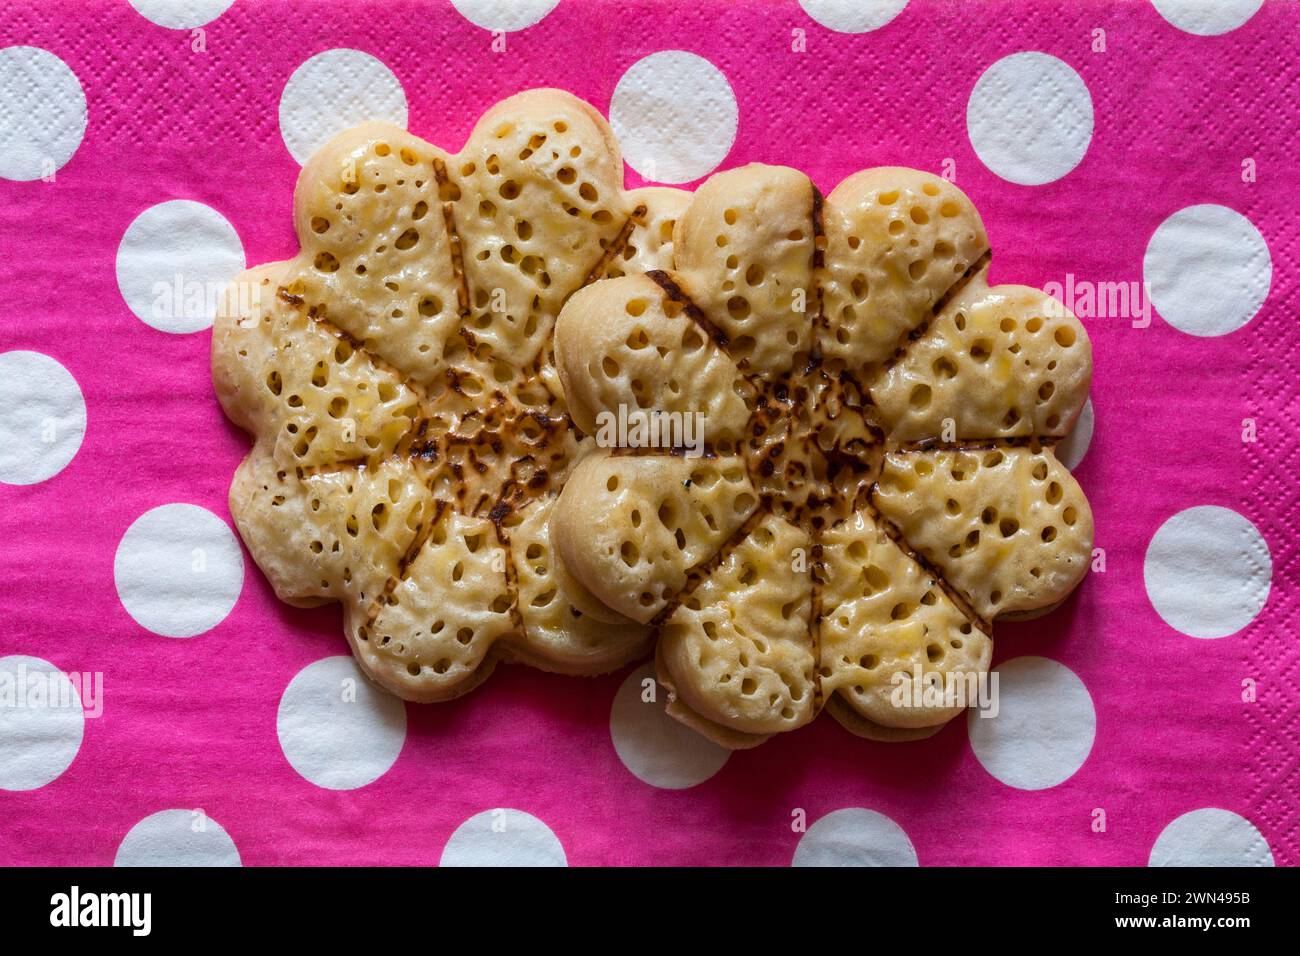 Blühende schöne Krumppern leichte flauschige, blumenförmige Krumpets von M&S auf rosa Polka Dots Serviette Stockfoto